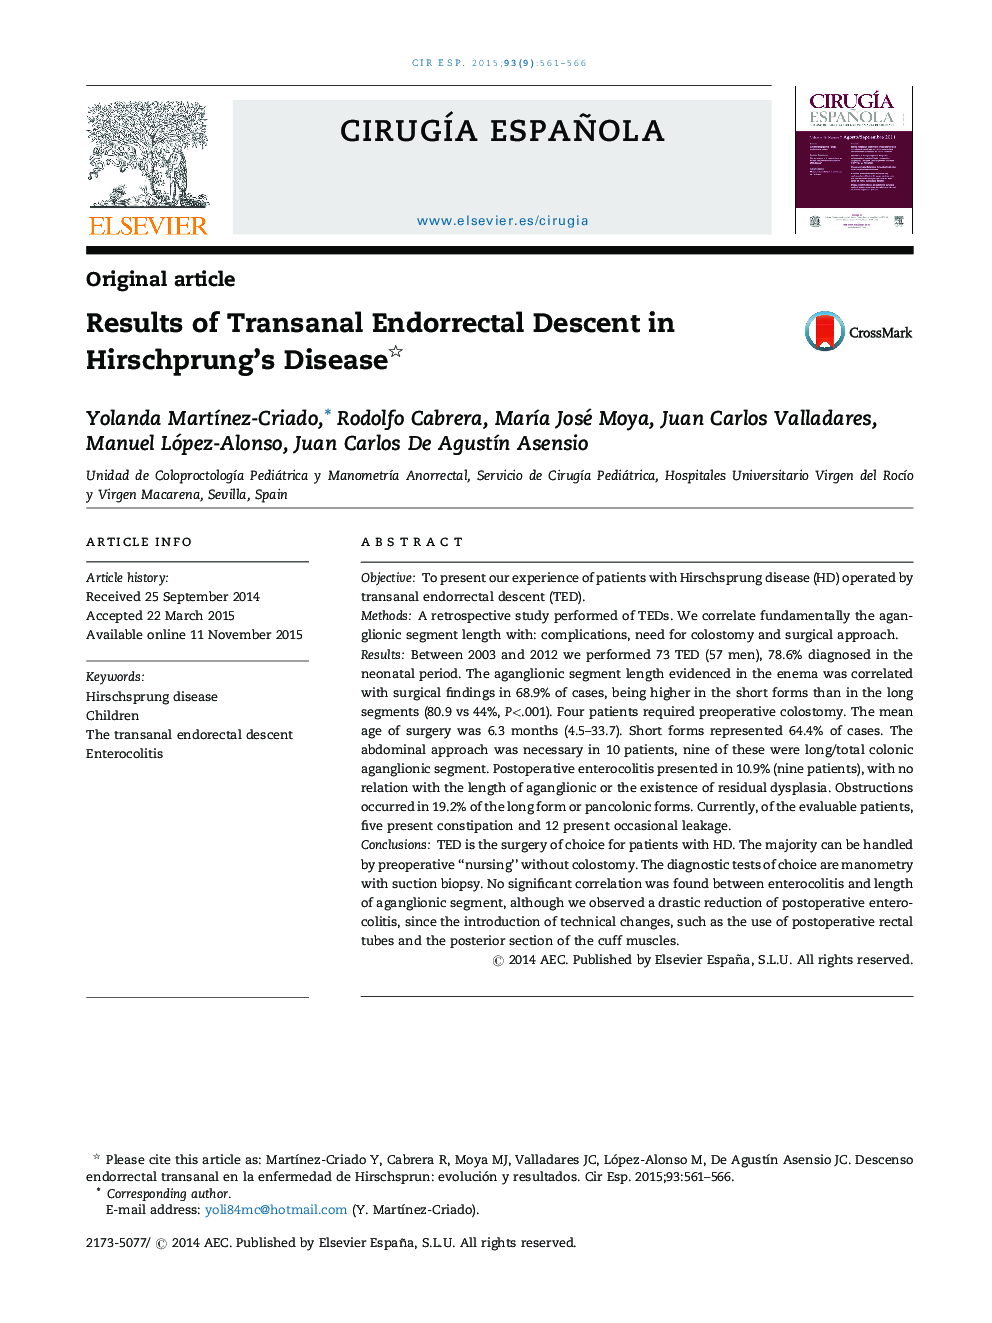 نتایج زایمان آندورکتال ترانزال در بیماری هیرشپرونگ 